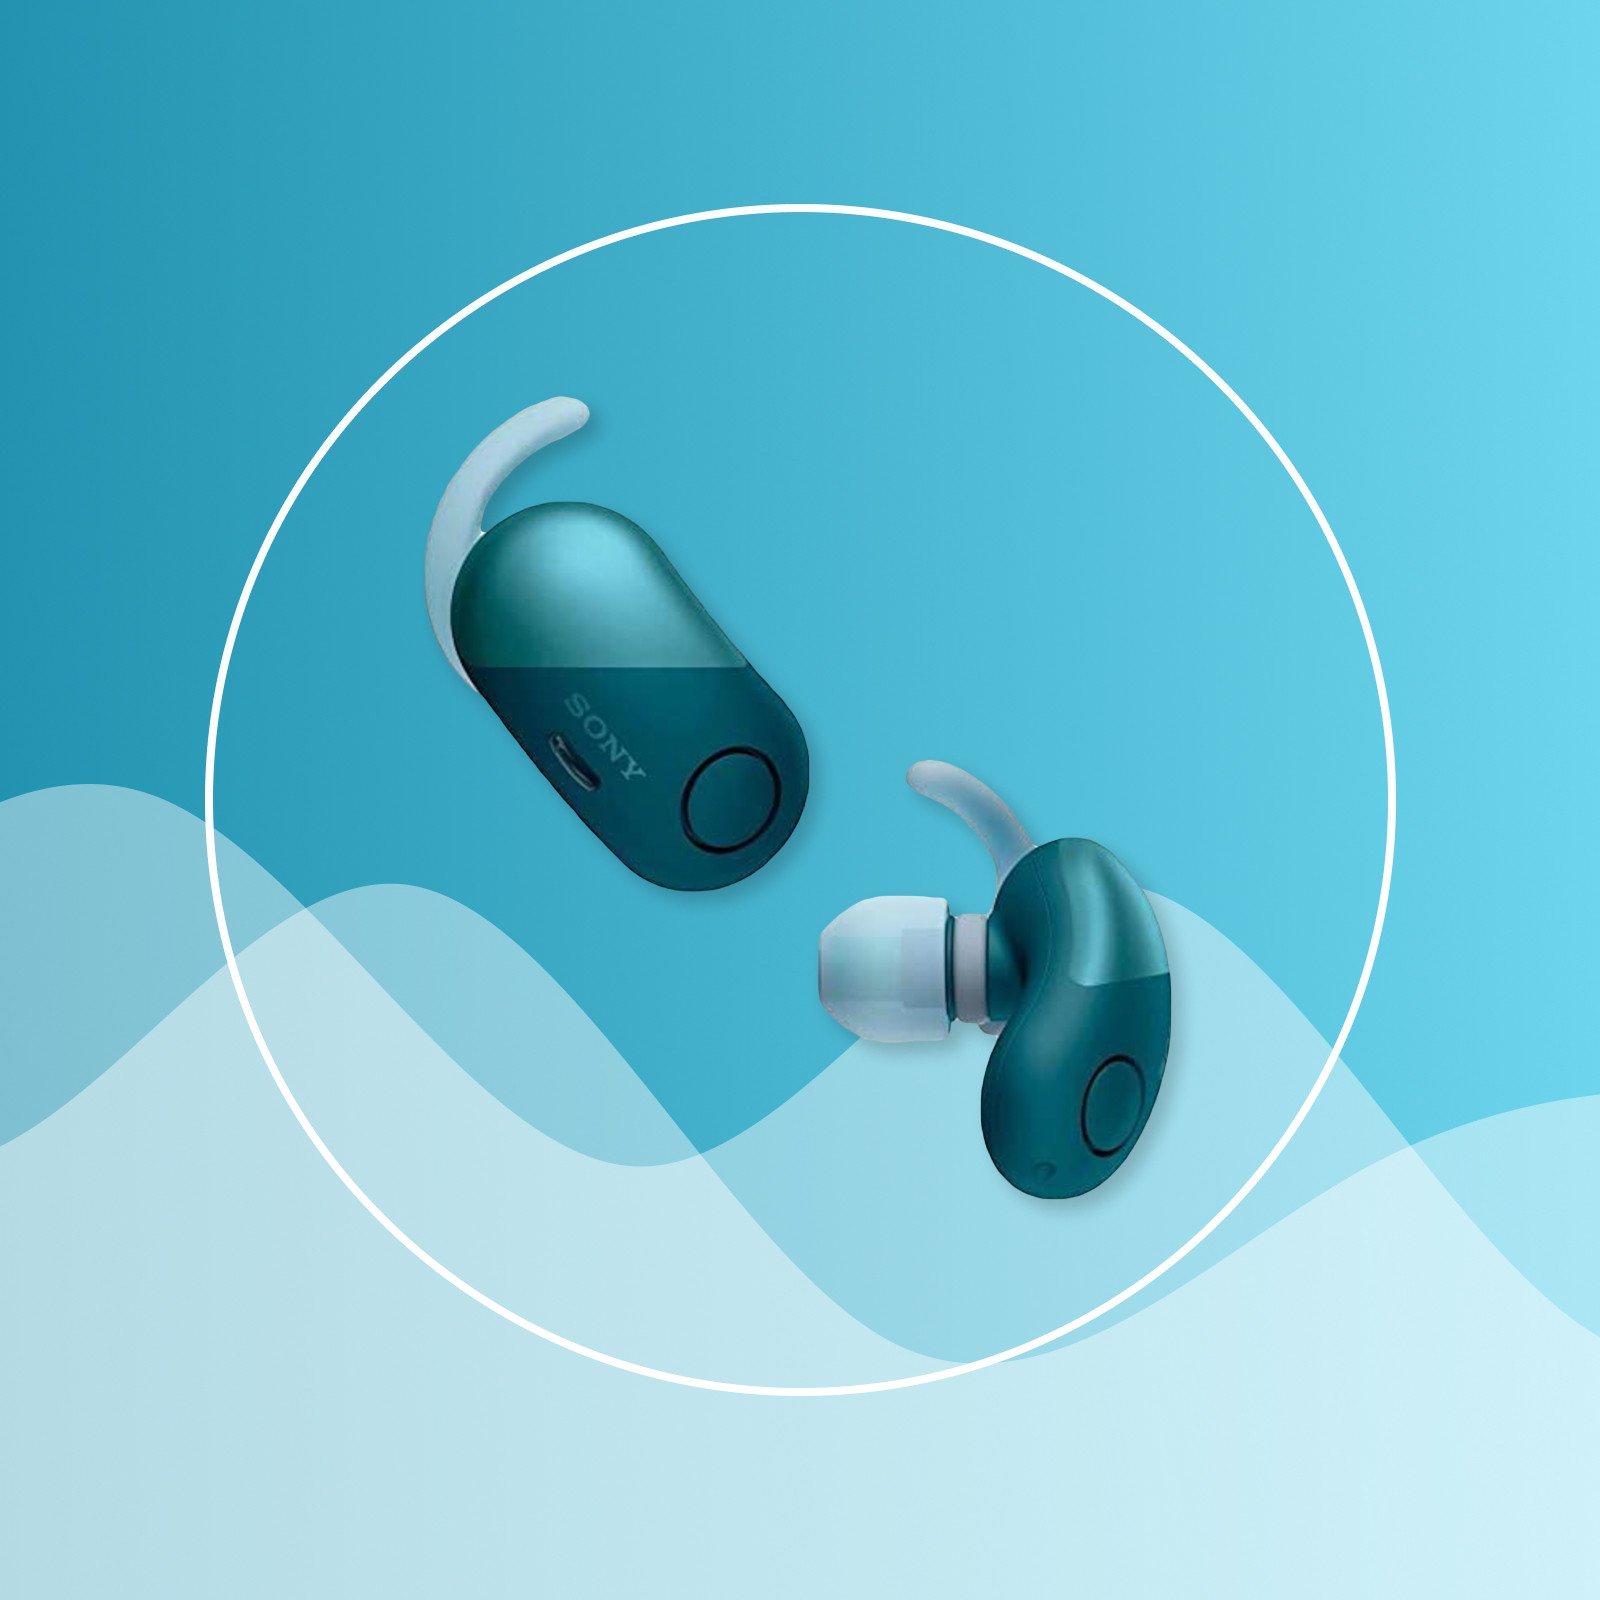 騒音対策に 耳栓にもなるノイズキャンセリングイヤホン8選